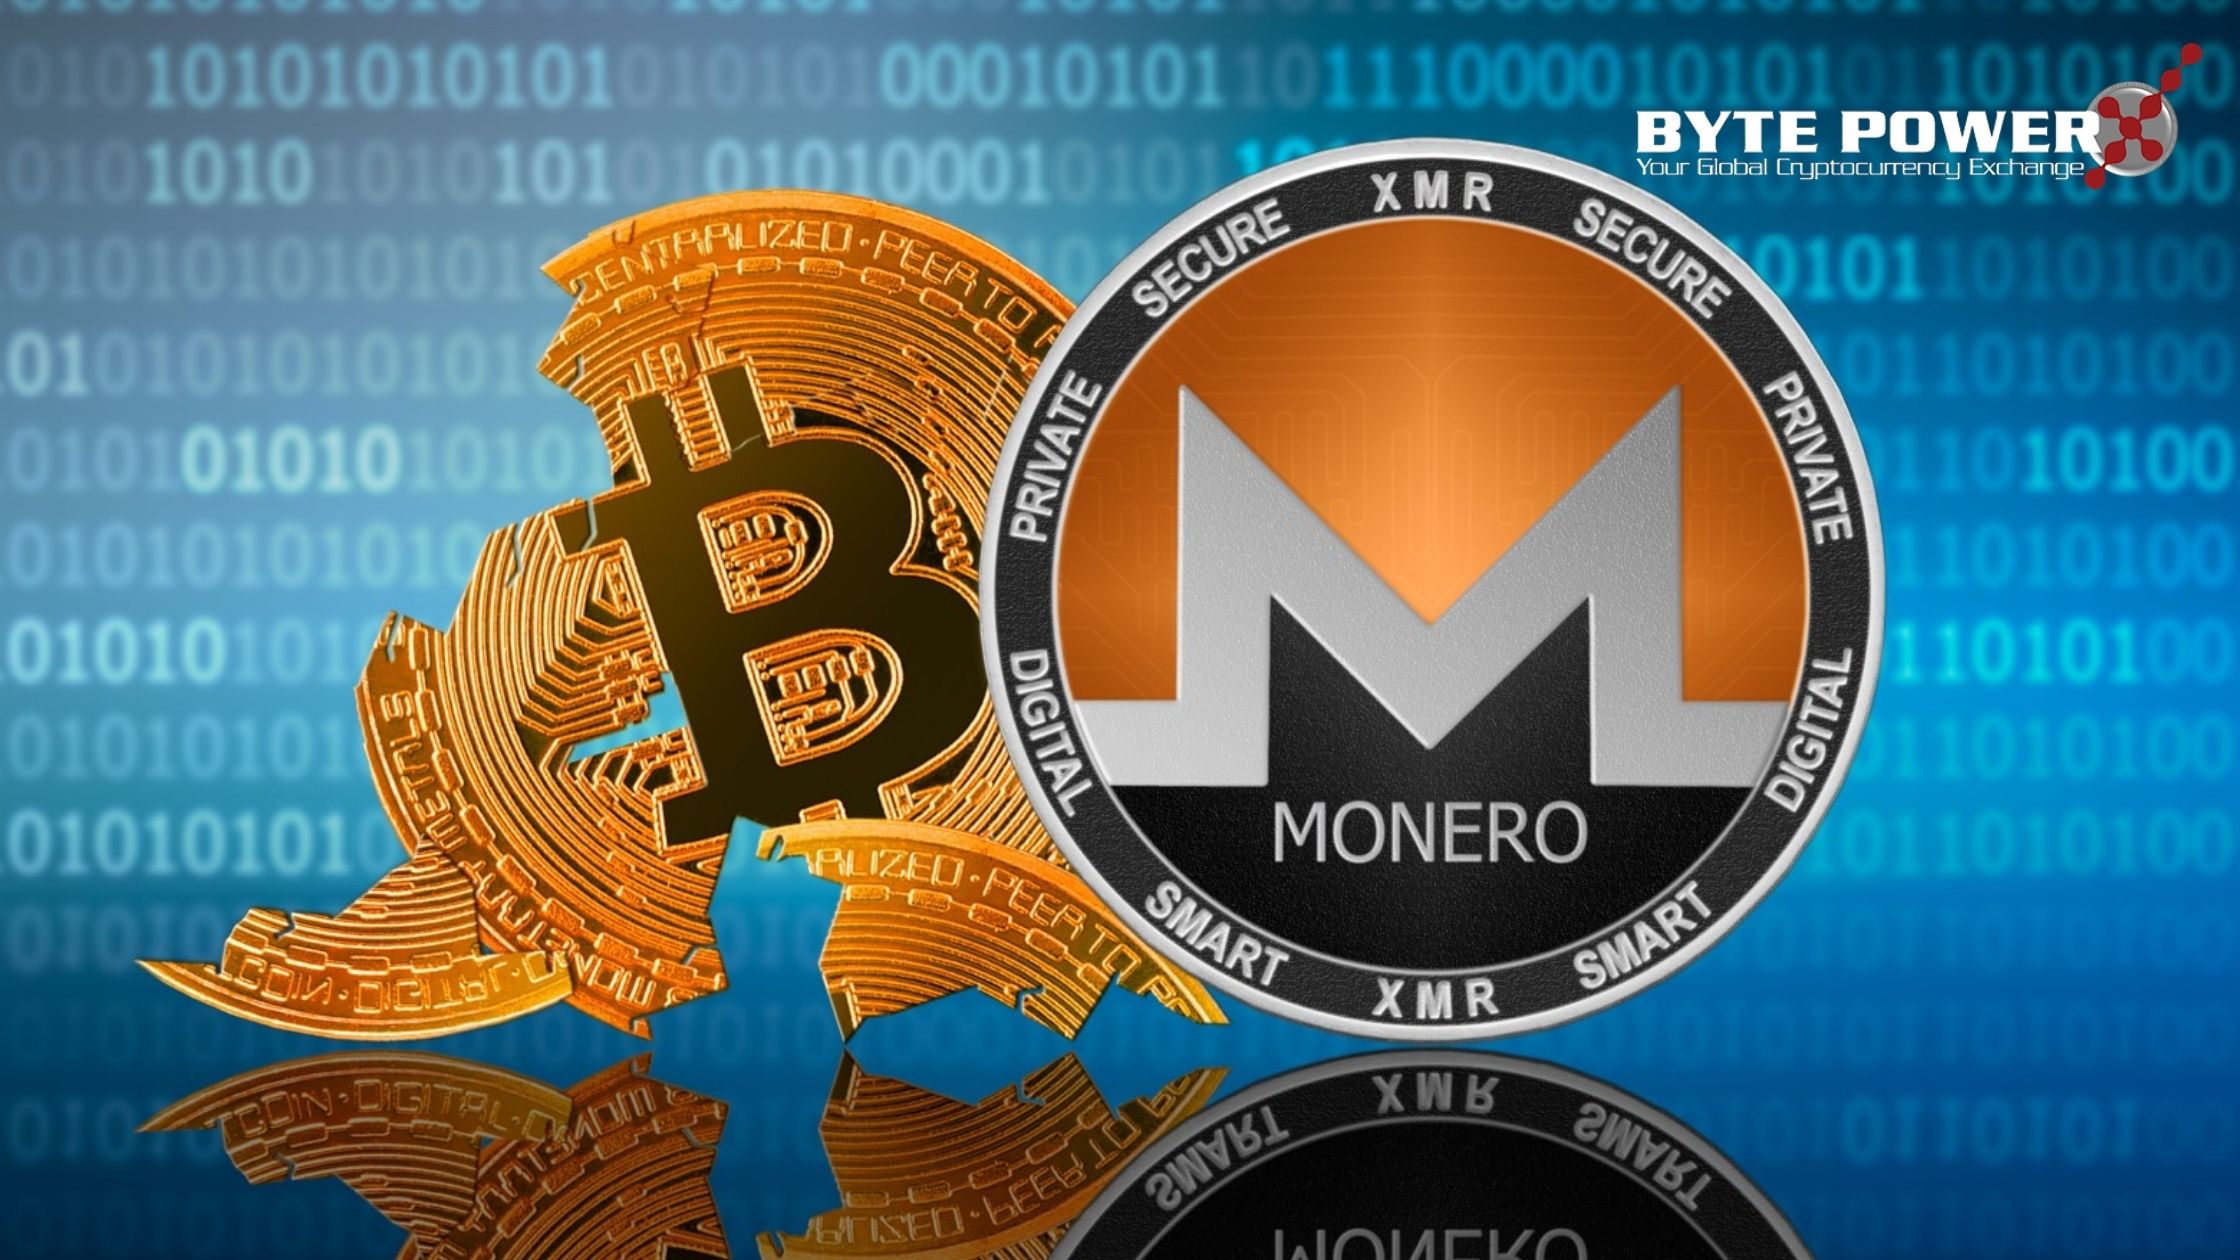 Monero Cryptocurrency